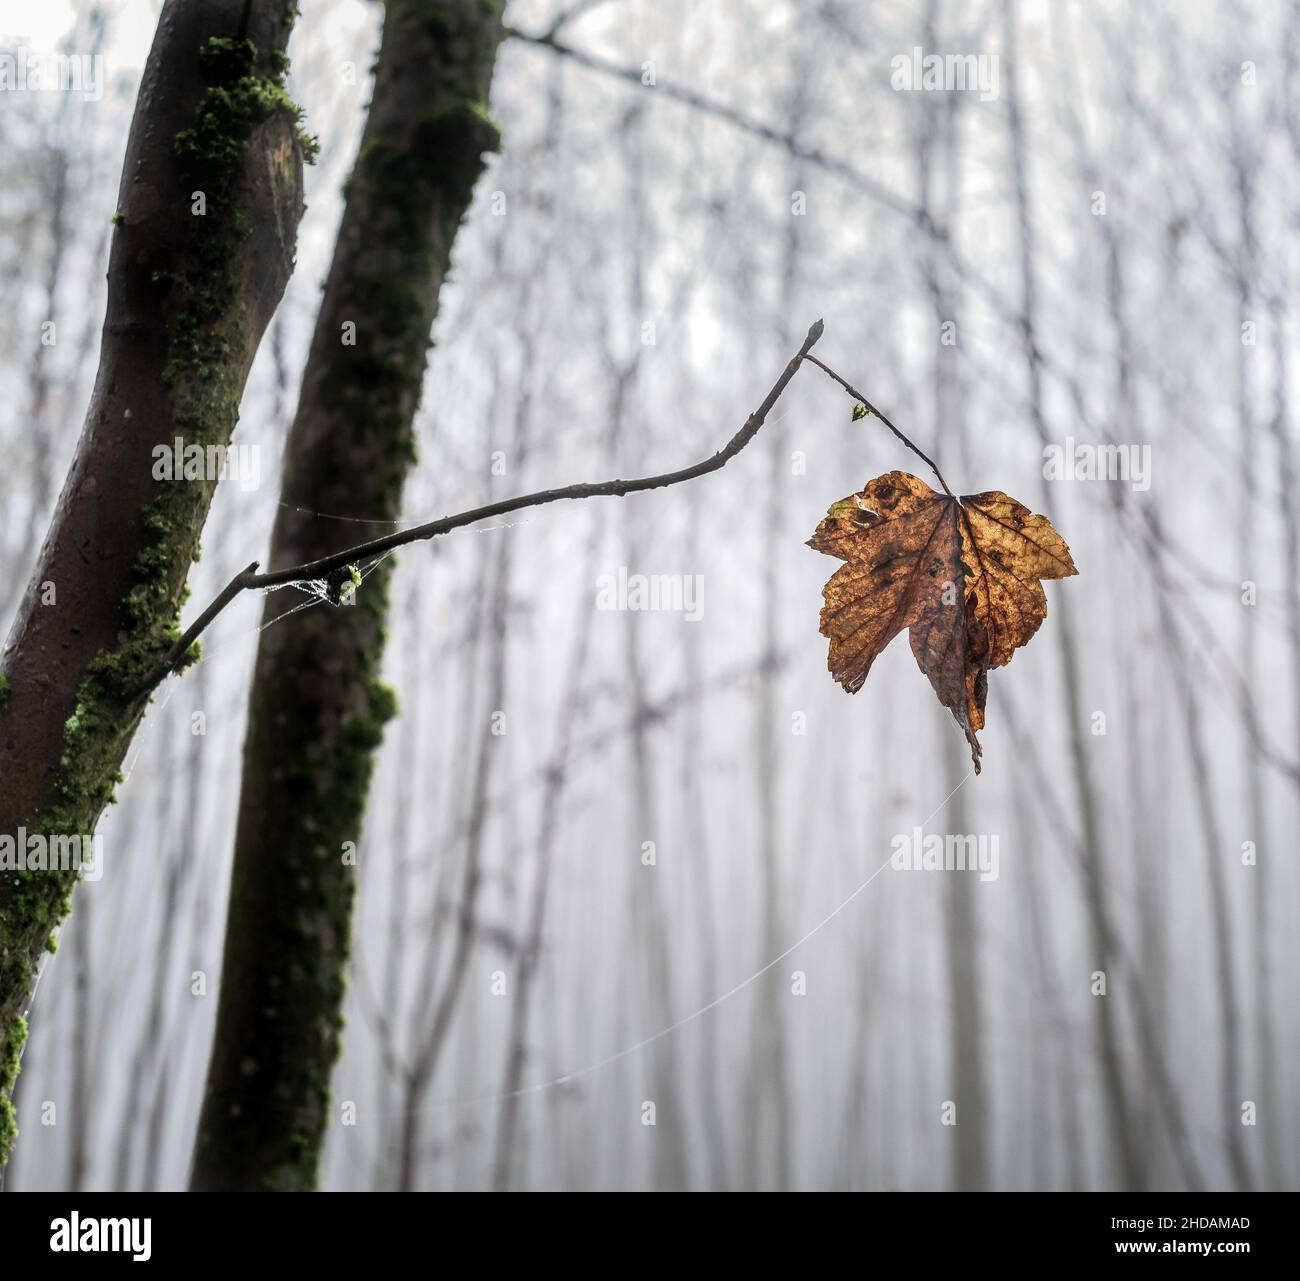 Ein Blatt hängt einsam auf einem Ast eines Baumes im späten Herbst. Stock Photo